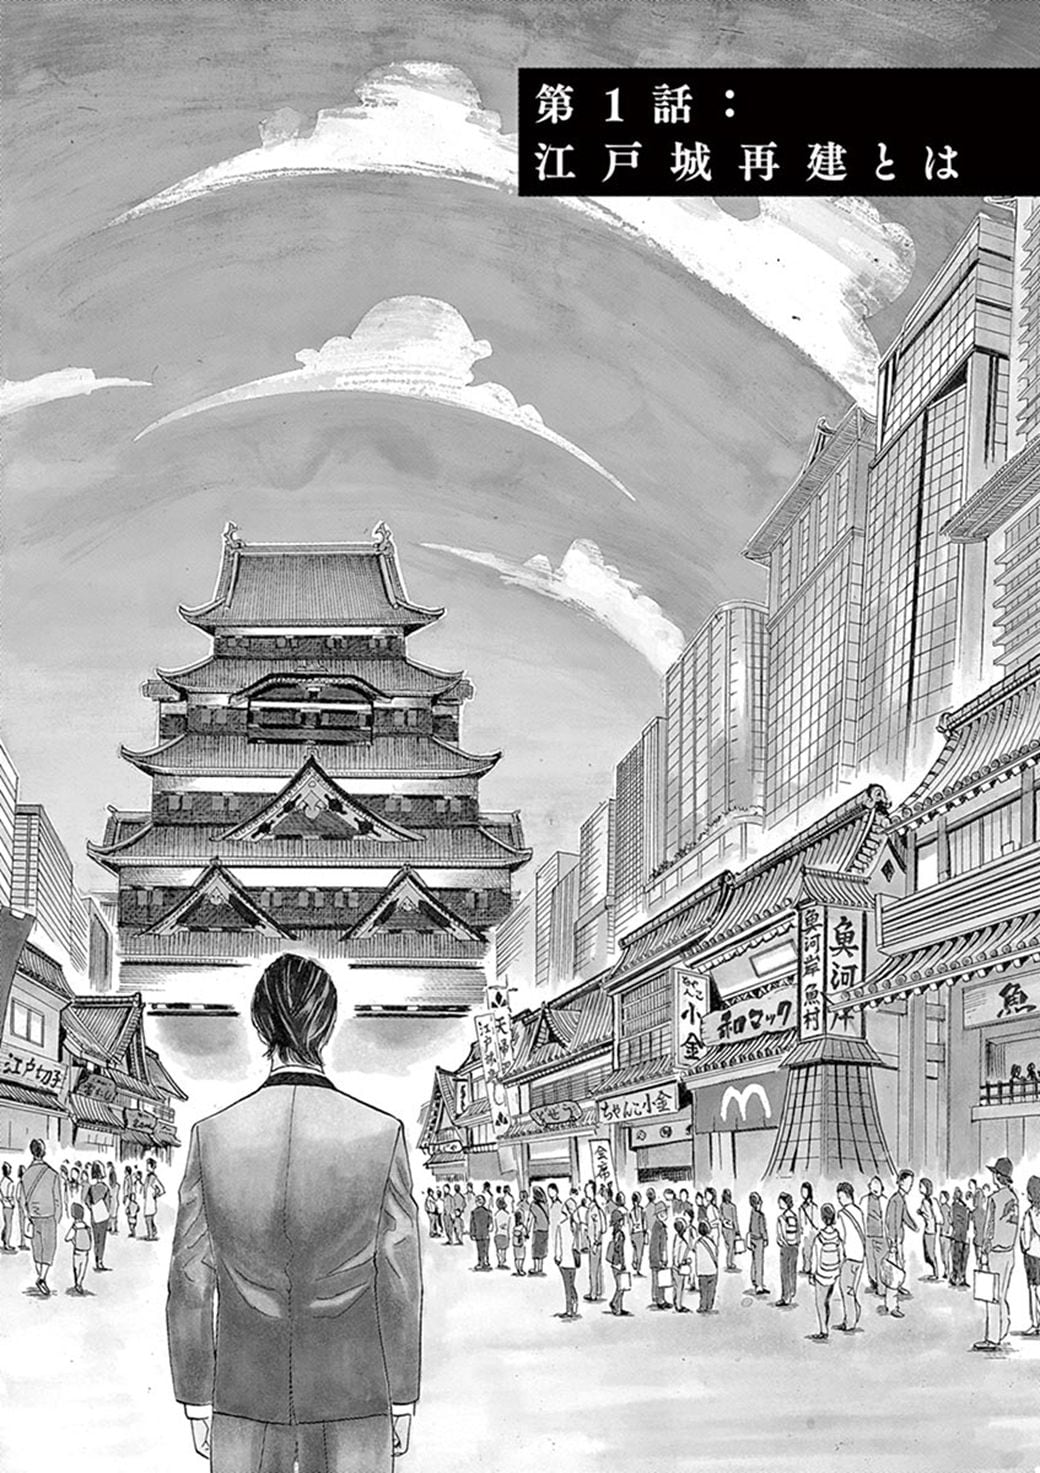 漫画 皇居に 江戸城を再建する と豪語する男の勝算 江戸城再建 東洋経済オンライン 社会をよくする経済ニュース